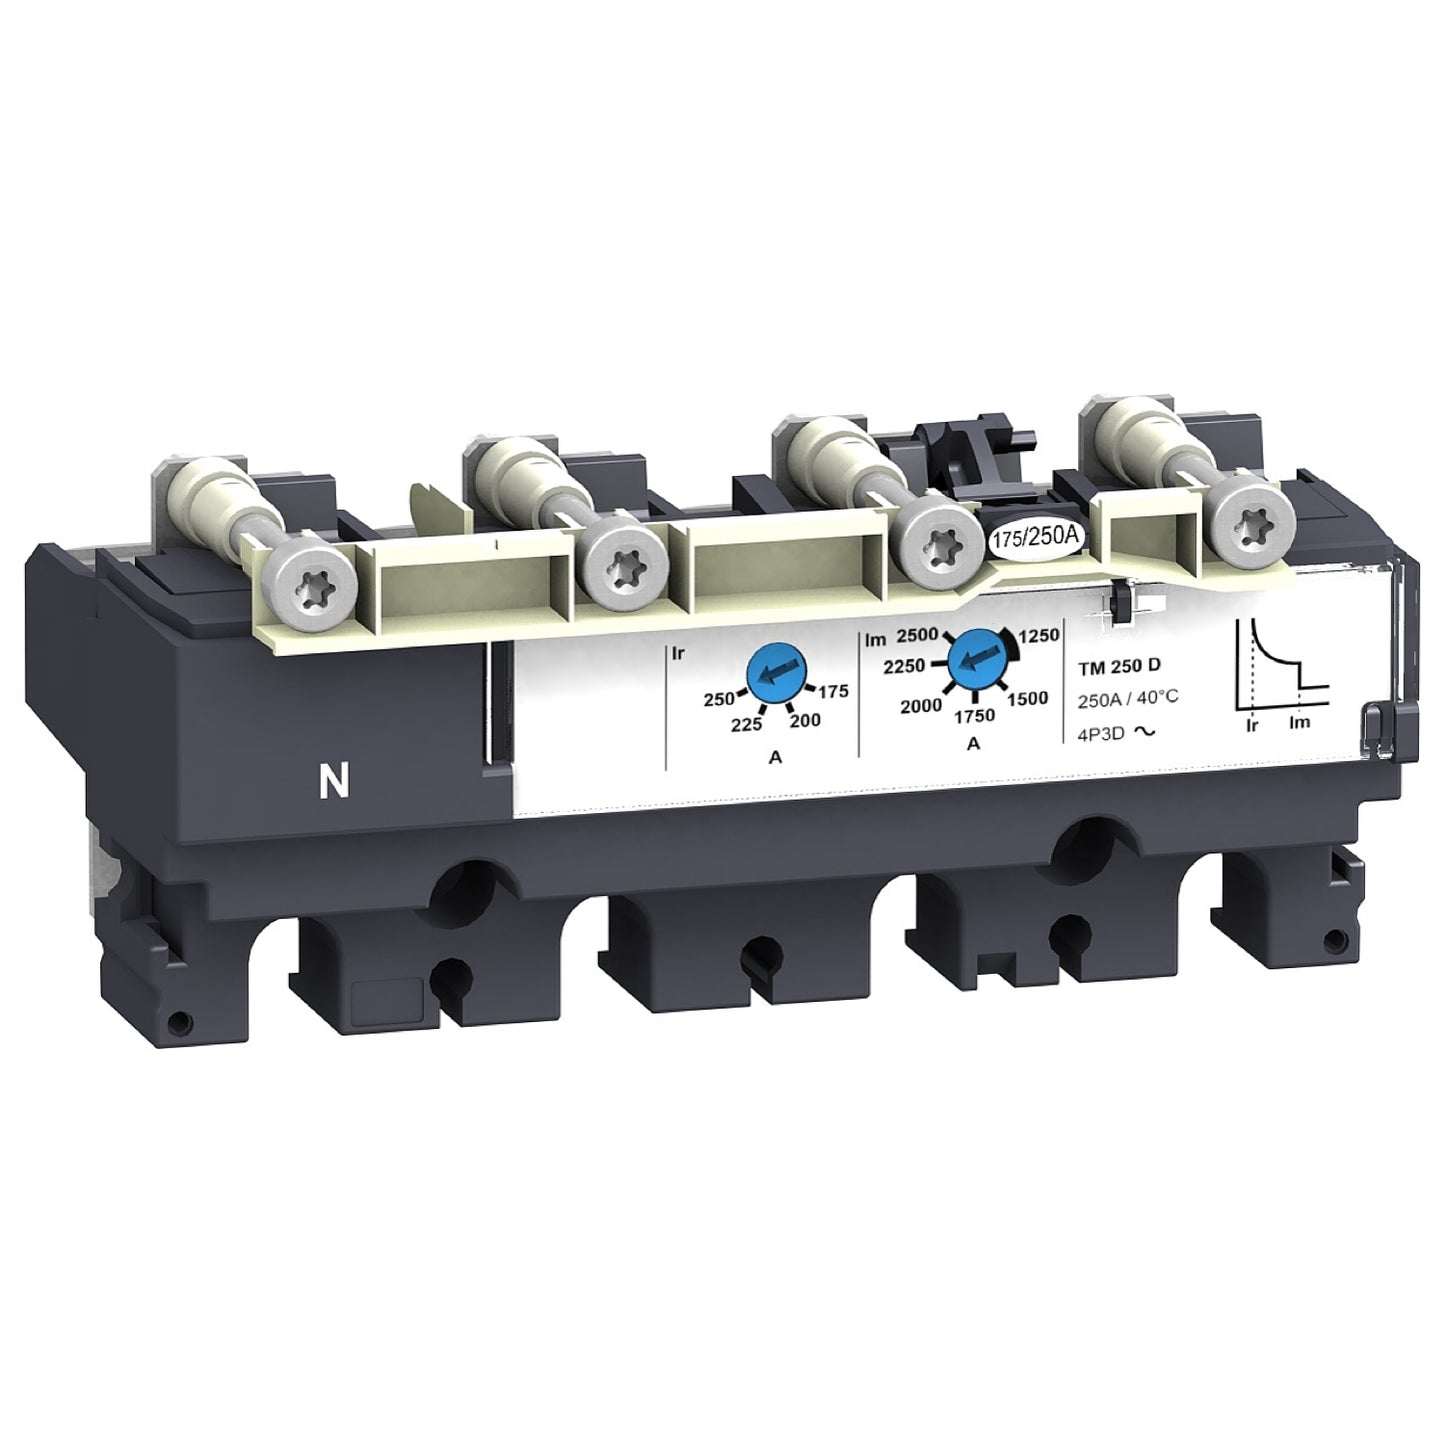 LV429044 Trip unit TM40D for NSX100/160 circuit breakers